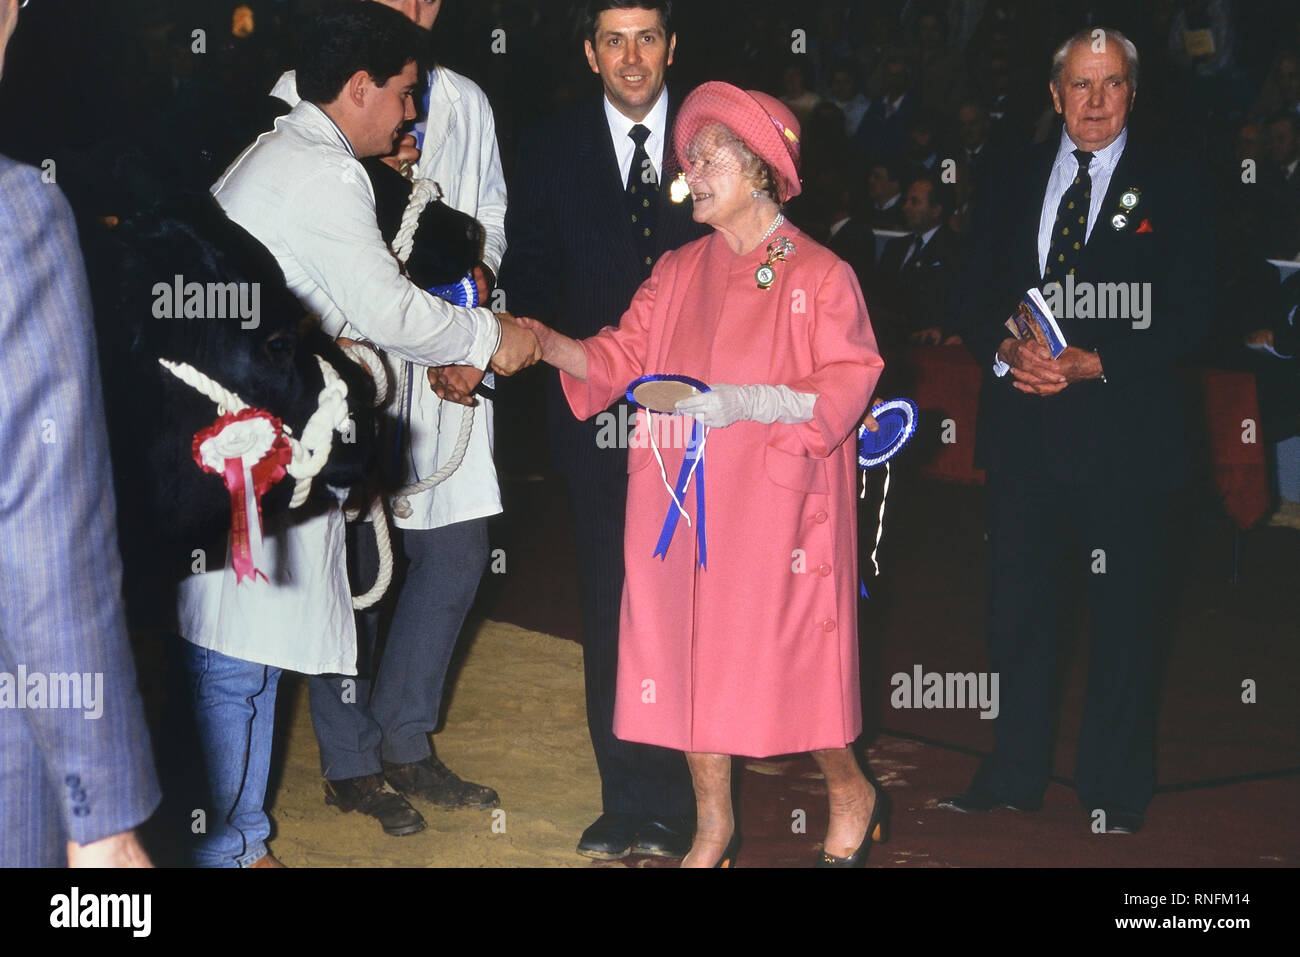 La regina Elisabetta Regina madre presentando rosette presso il Royal Smithfield Show, Earls Court, Londra, Inghilterra, Regno Unito. 1989 Foto Stock